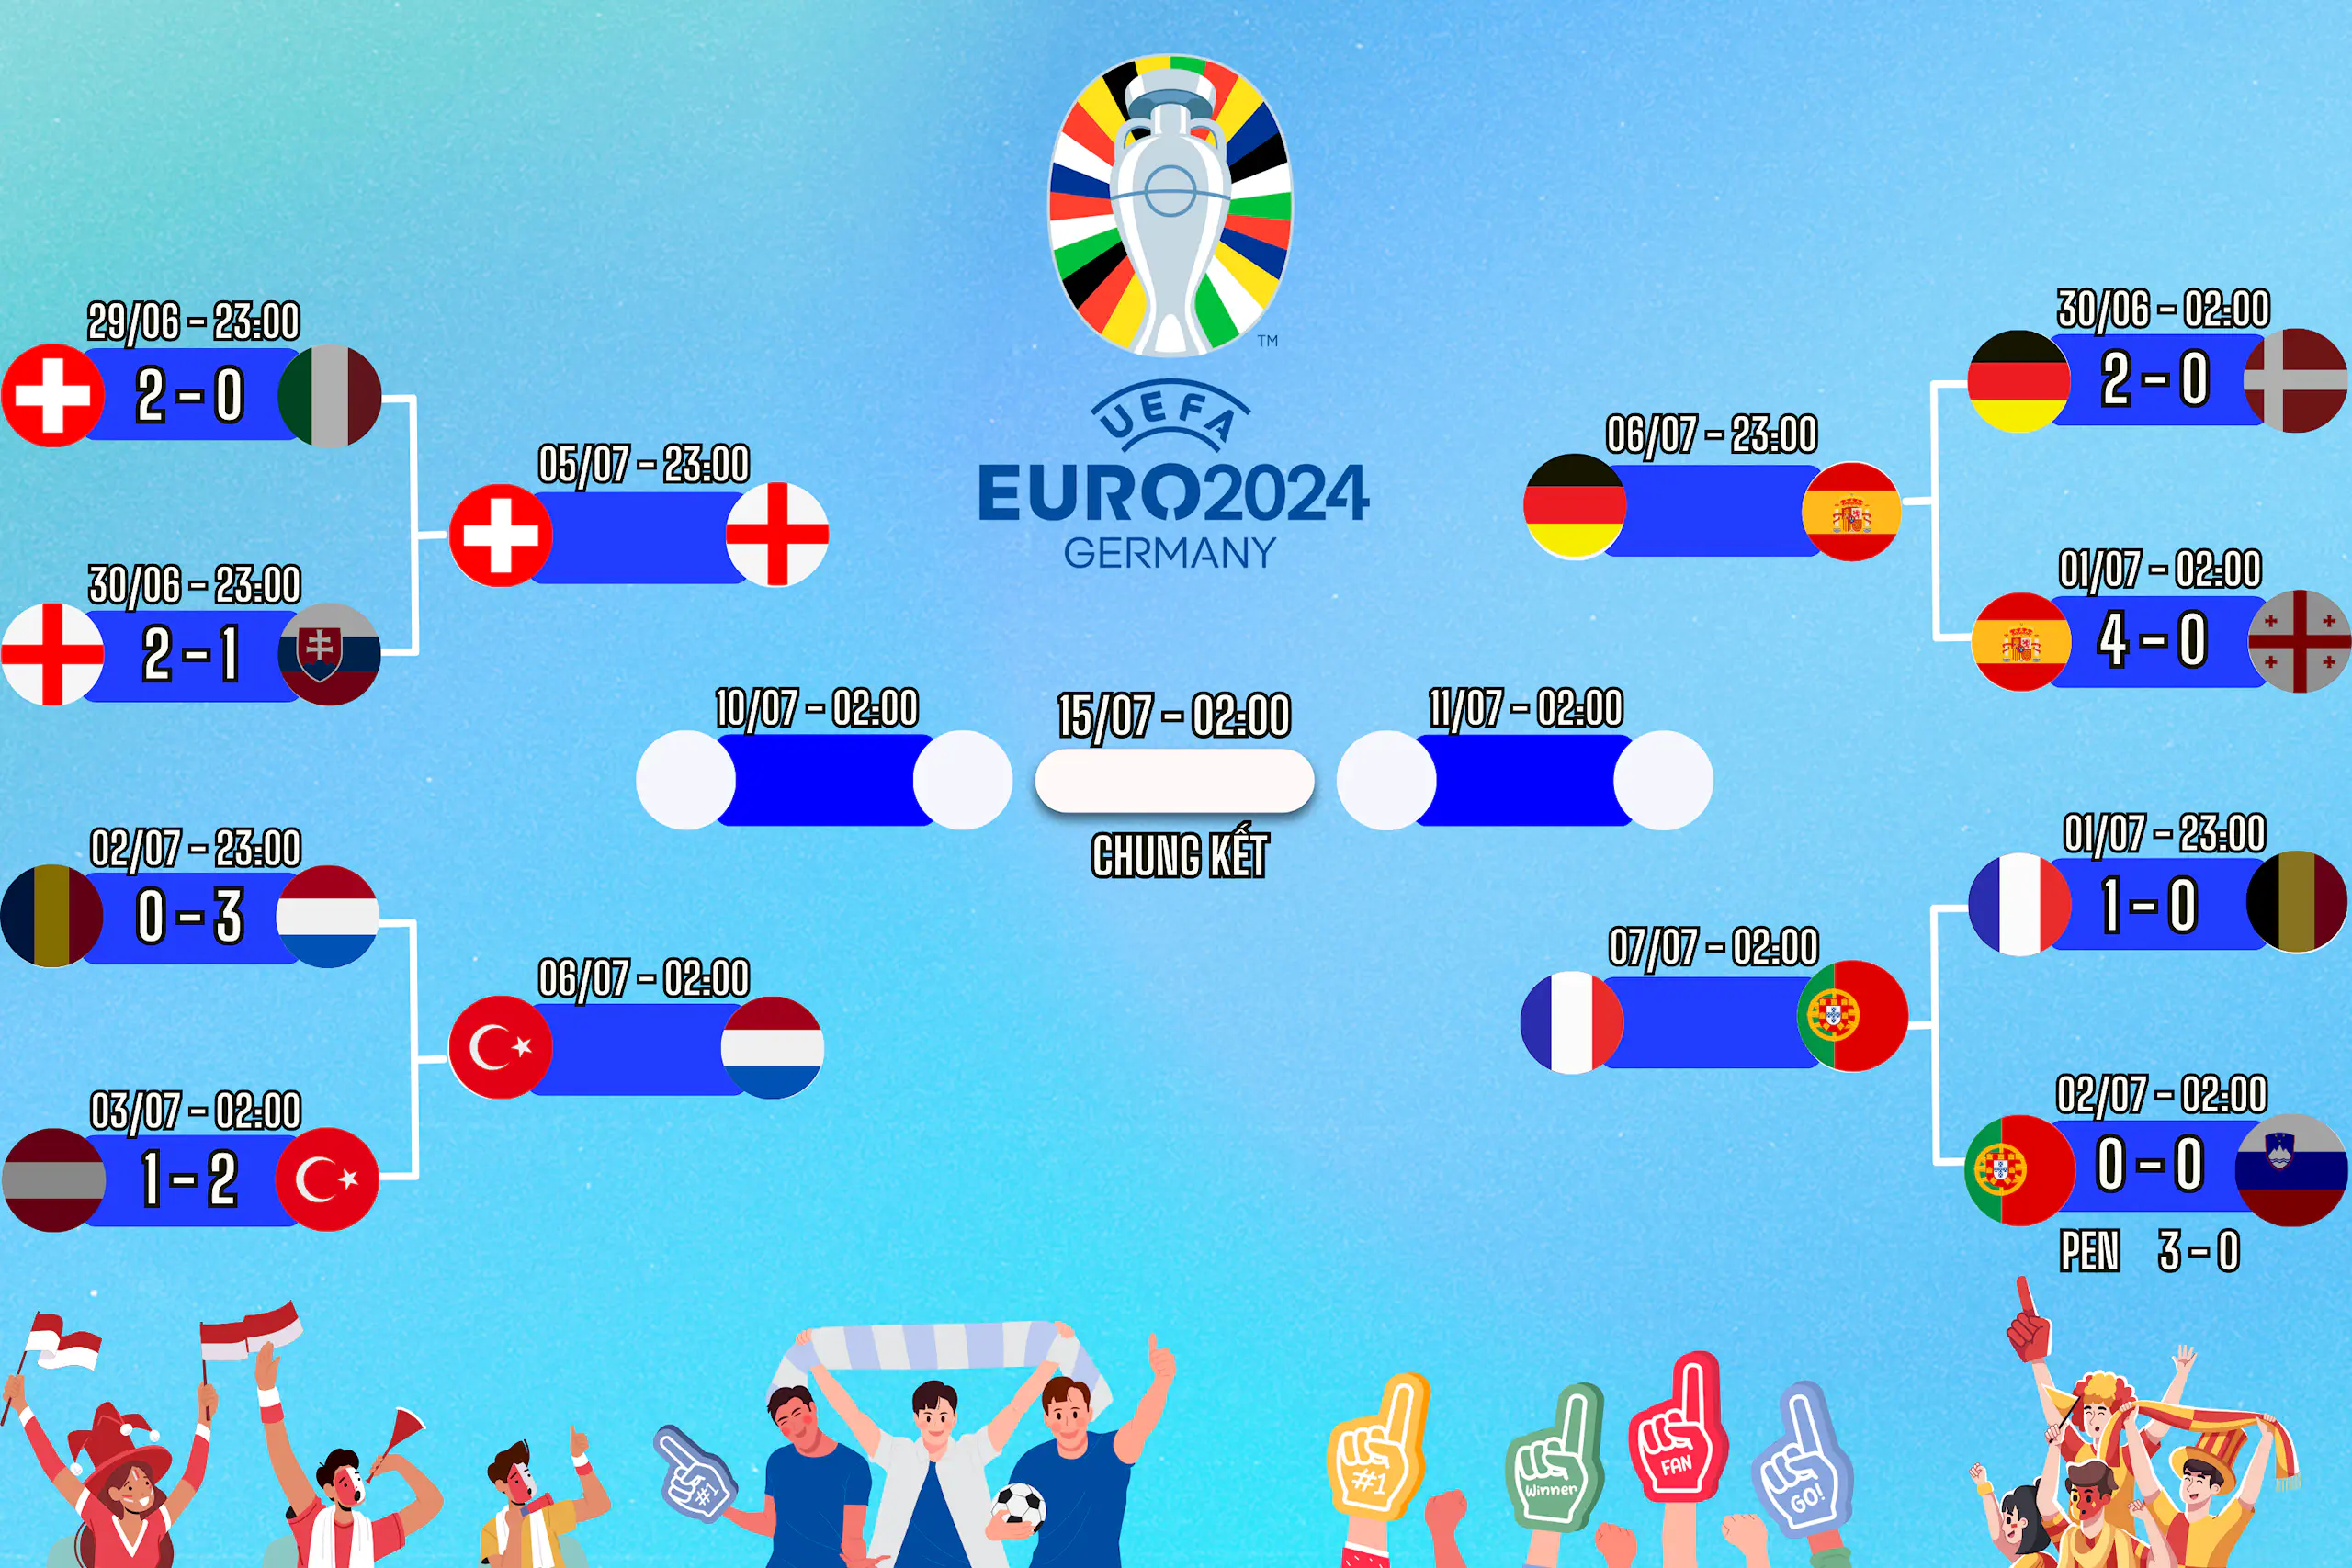 Lịch thi đấu EURO 2024 vòng 1/8 ngày 03/07, cập nhật kết quả và dự đoán tỉ số trận đấu cùng Congngheviet